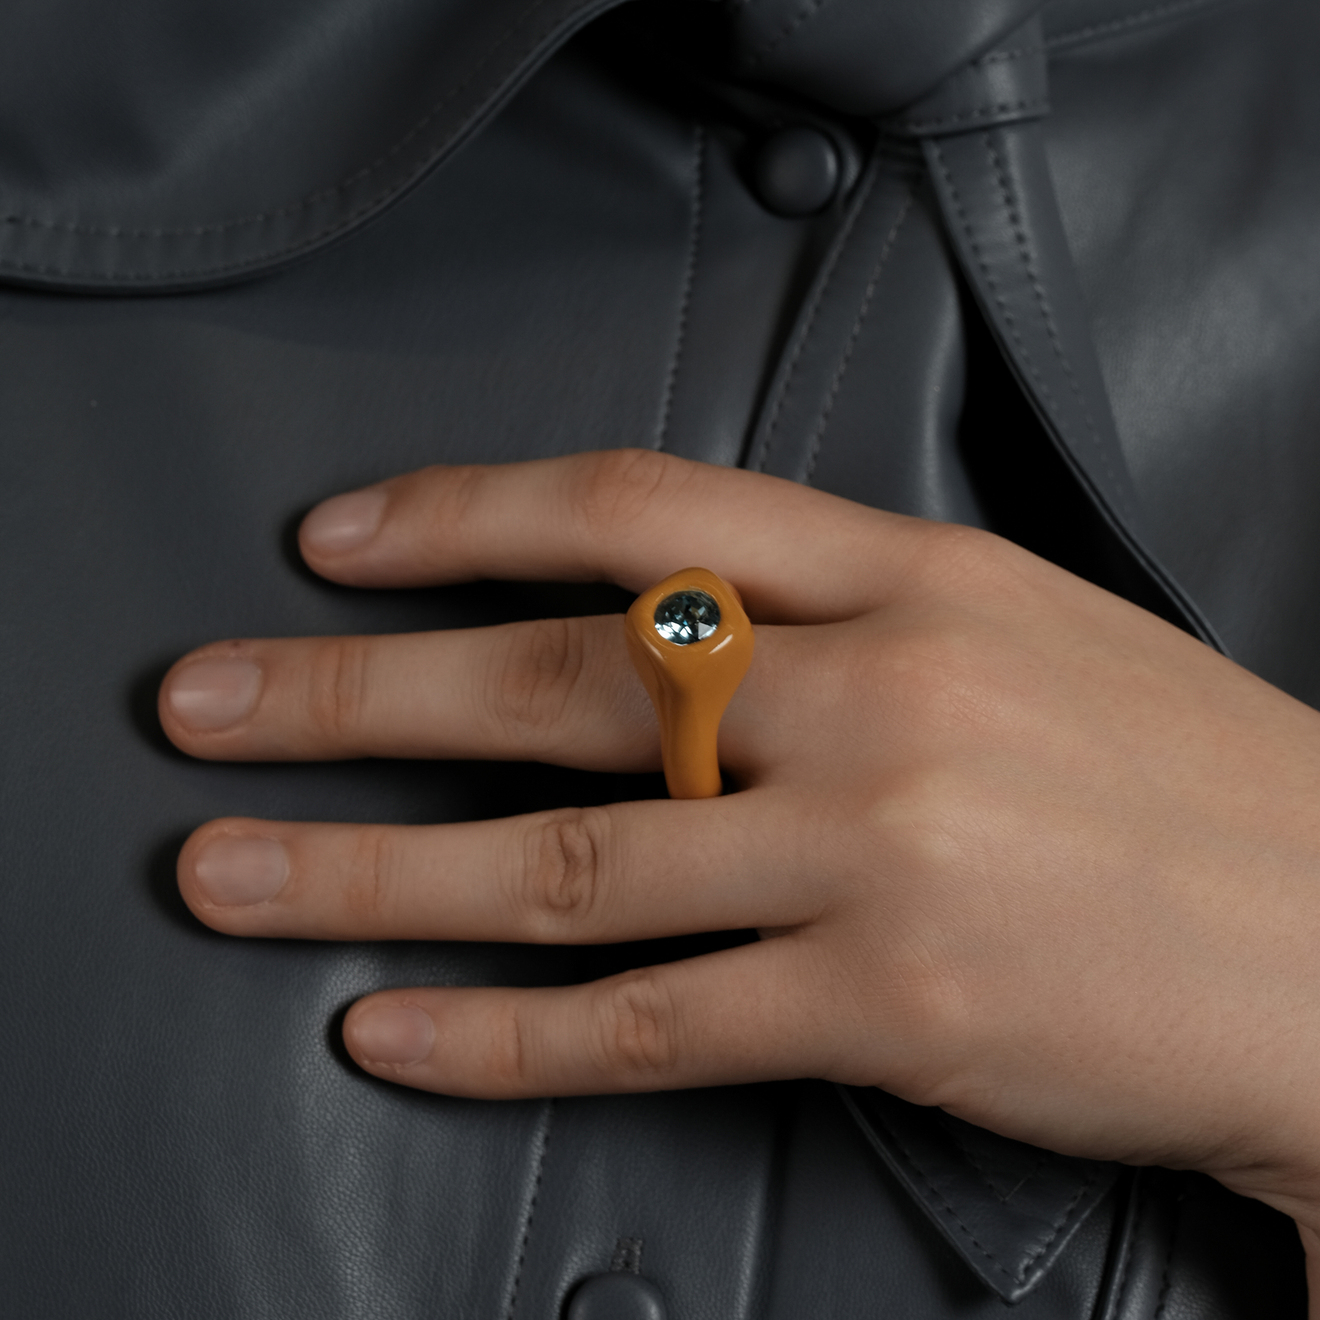 de.formee Оранжевое кольцо с голубым кристаллом